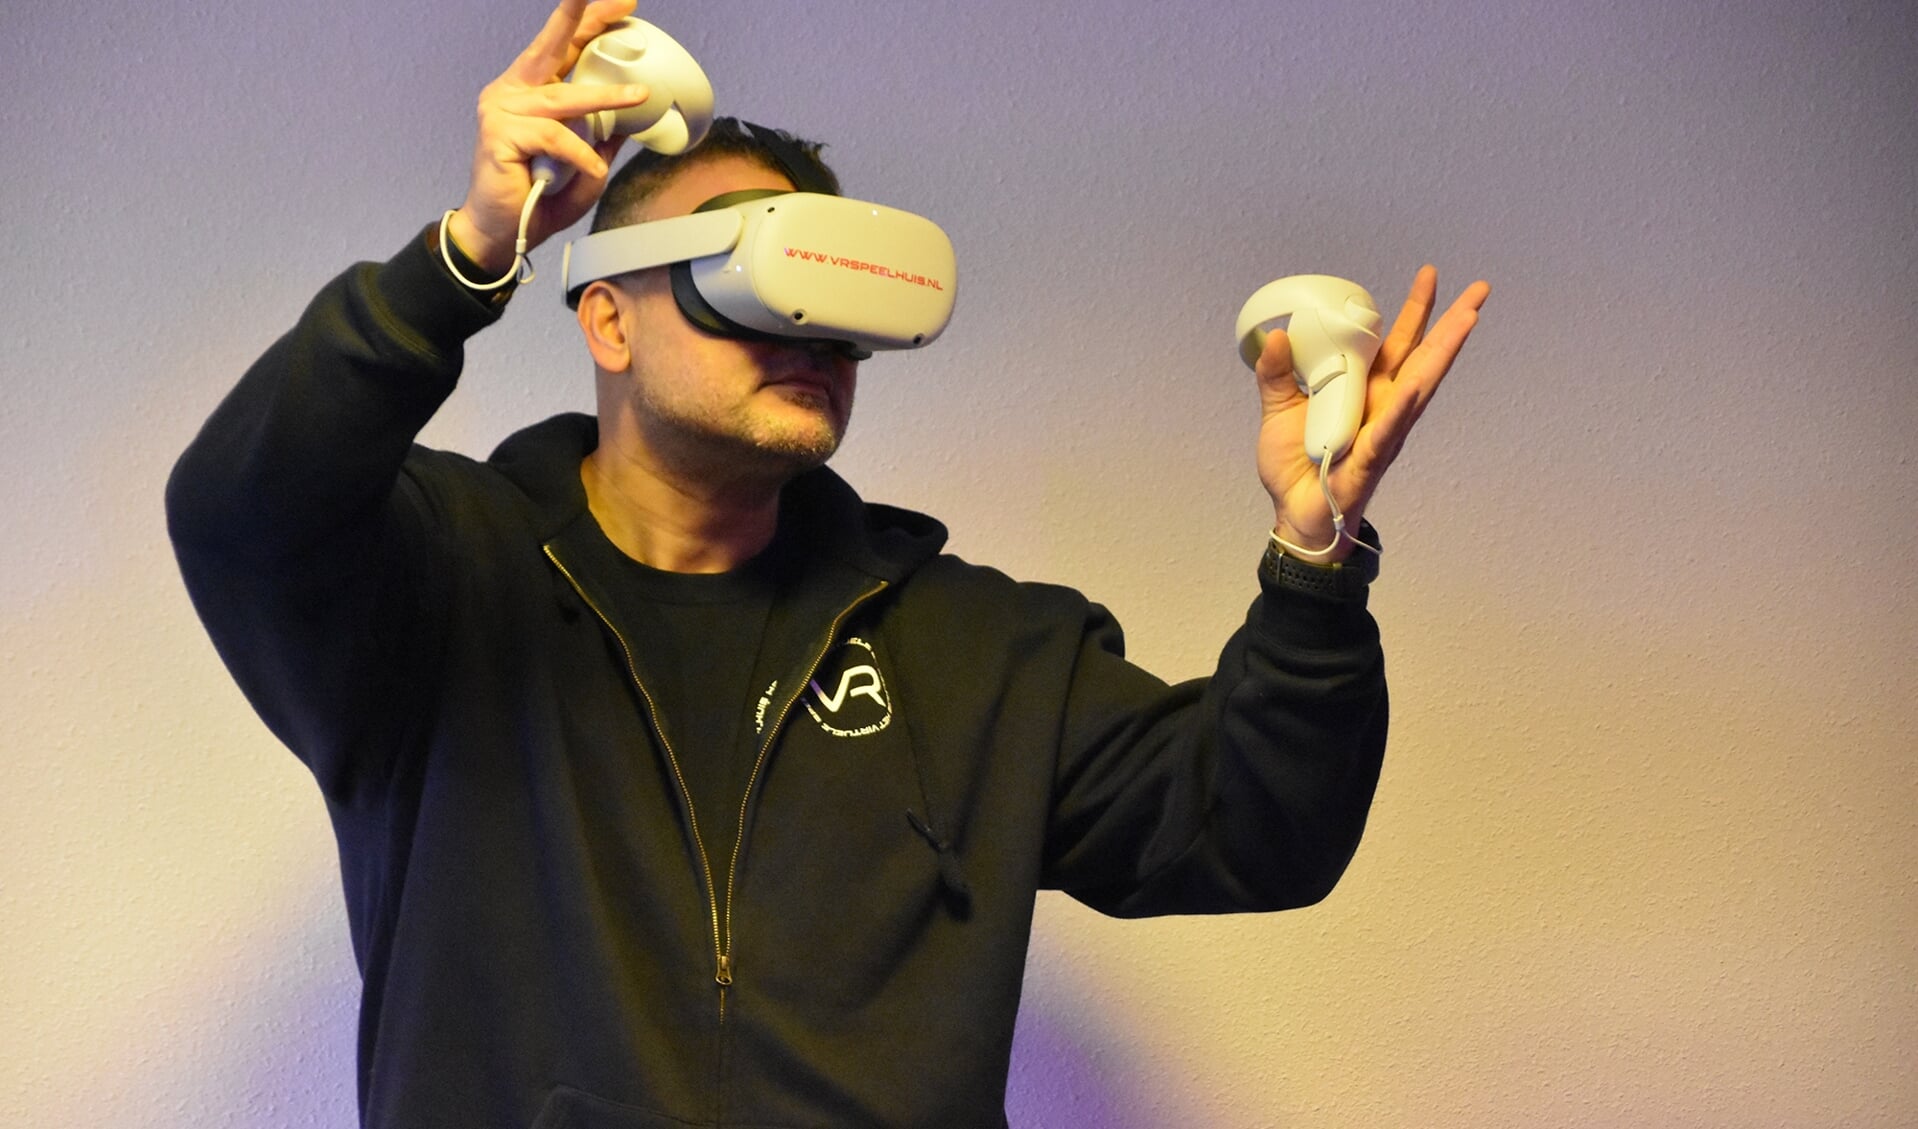 Amstelvener Badr speelt een VR-spel.